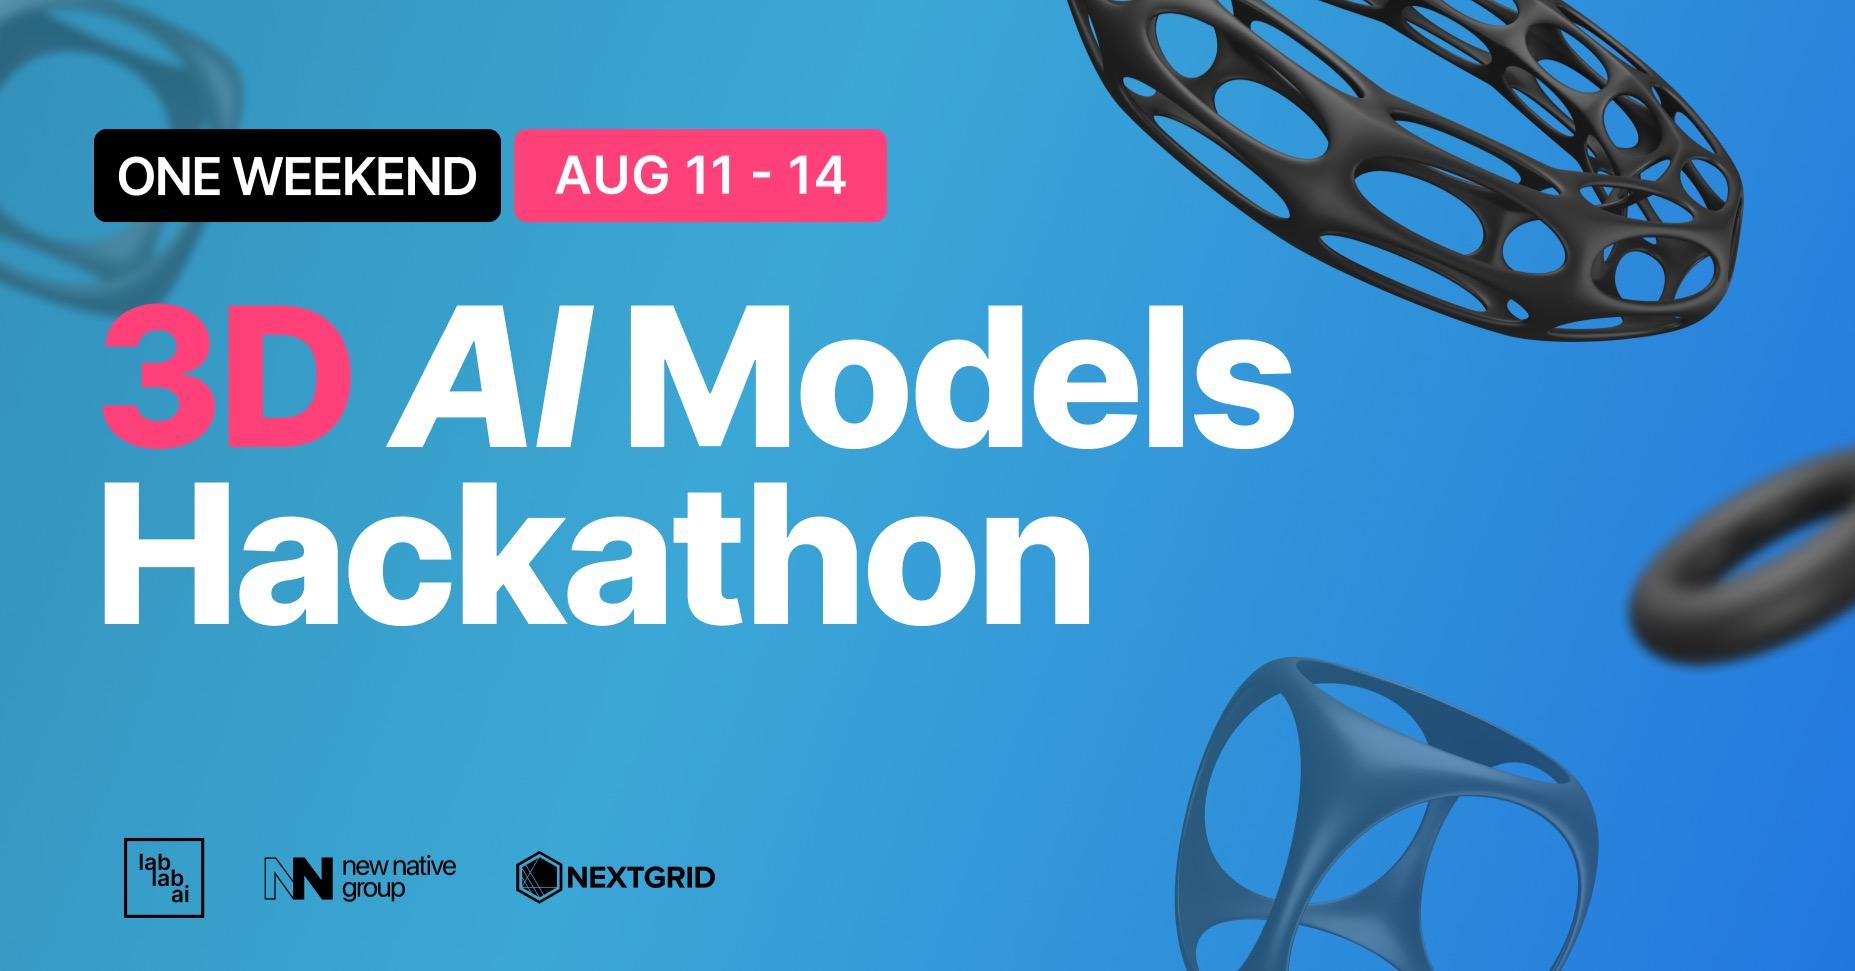 3D AI Models Hackathon image